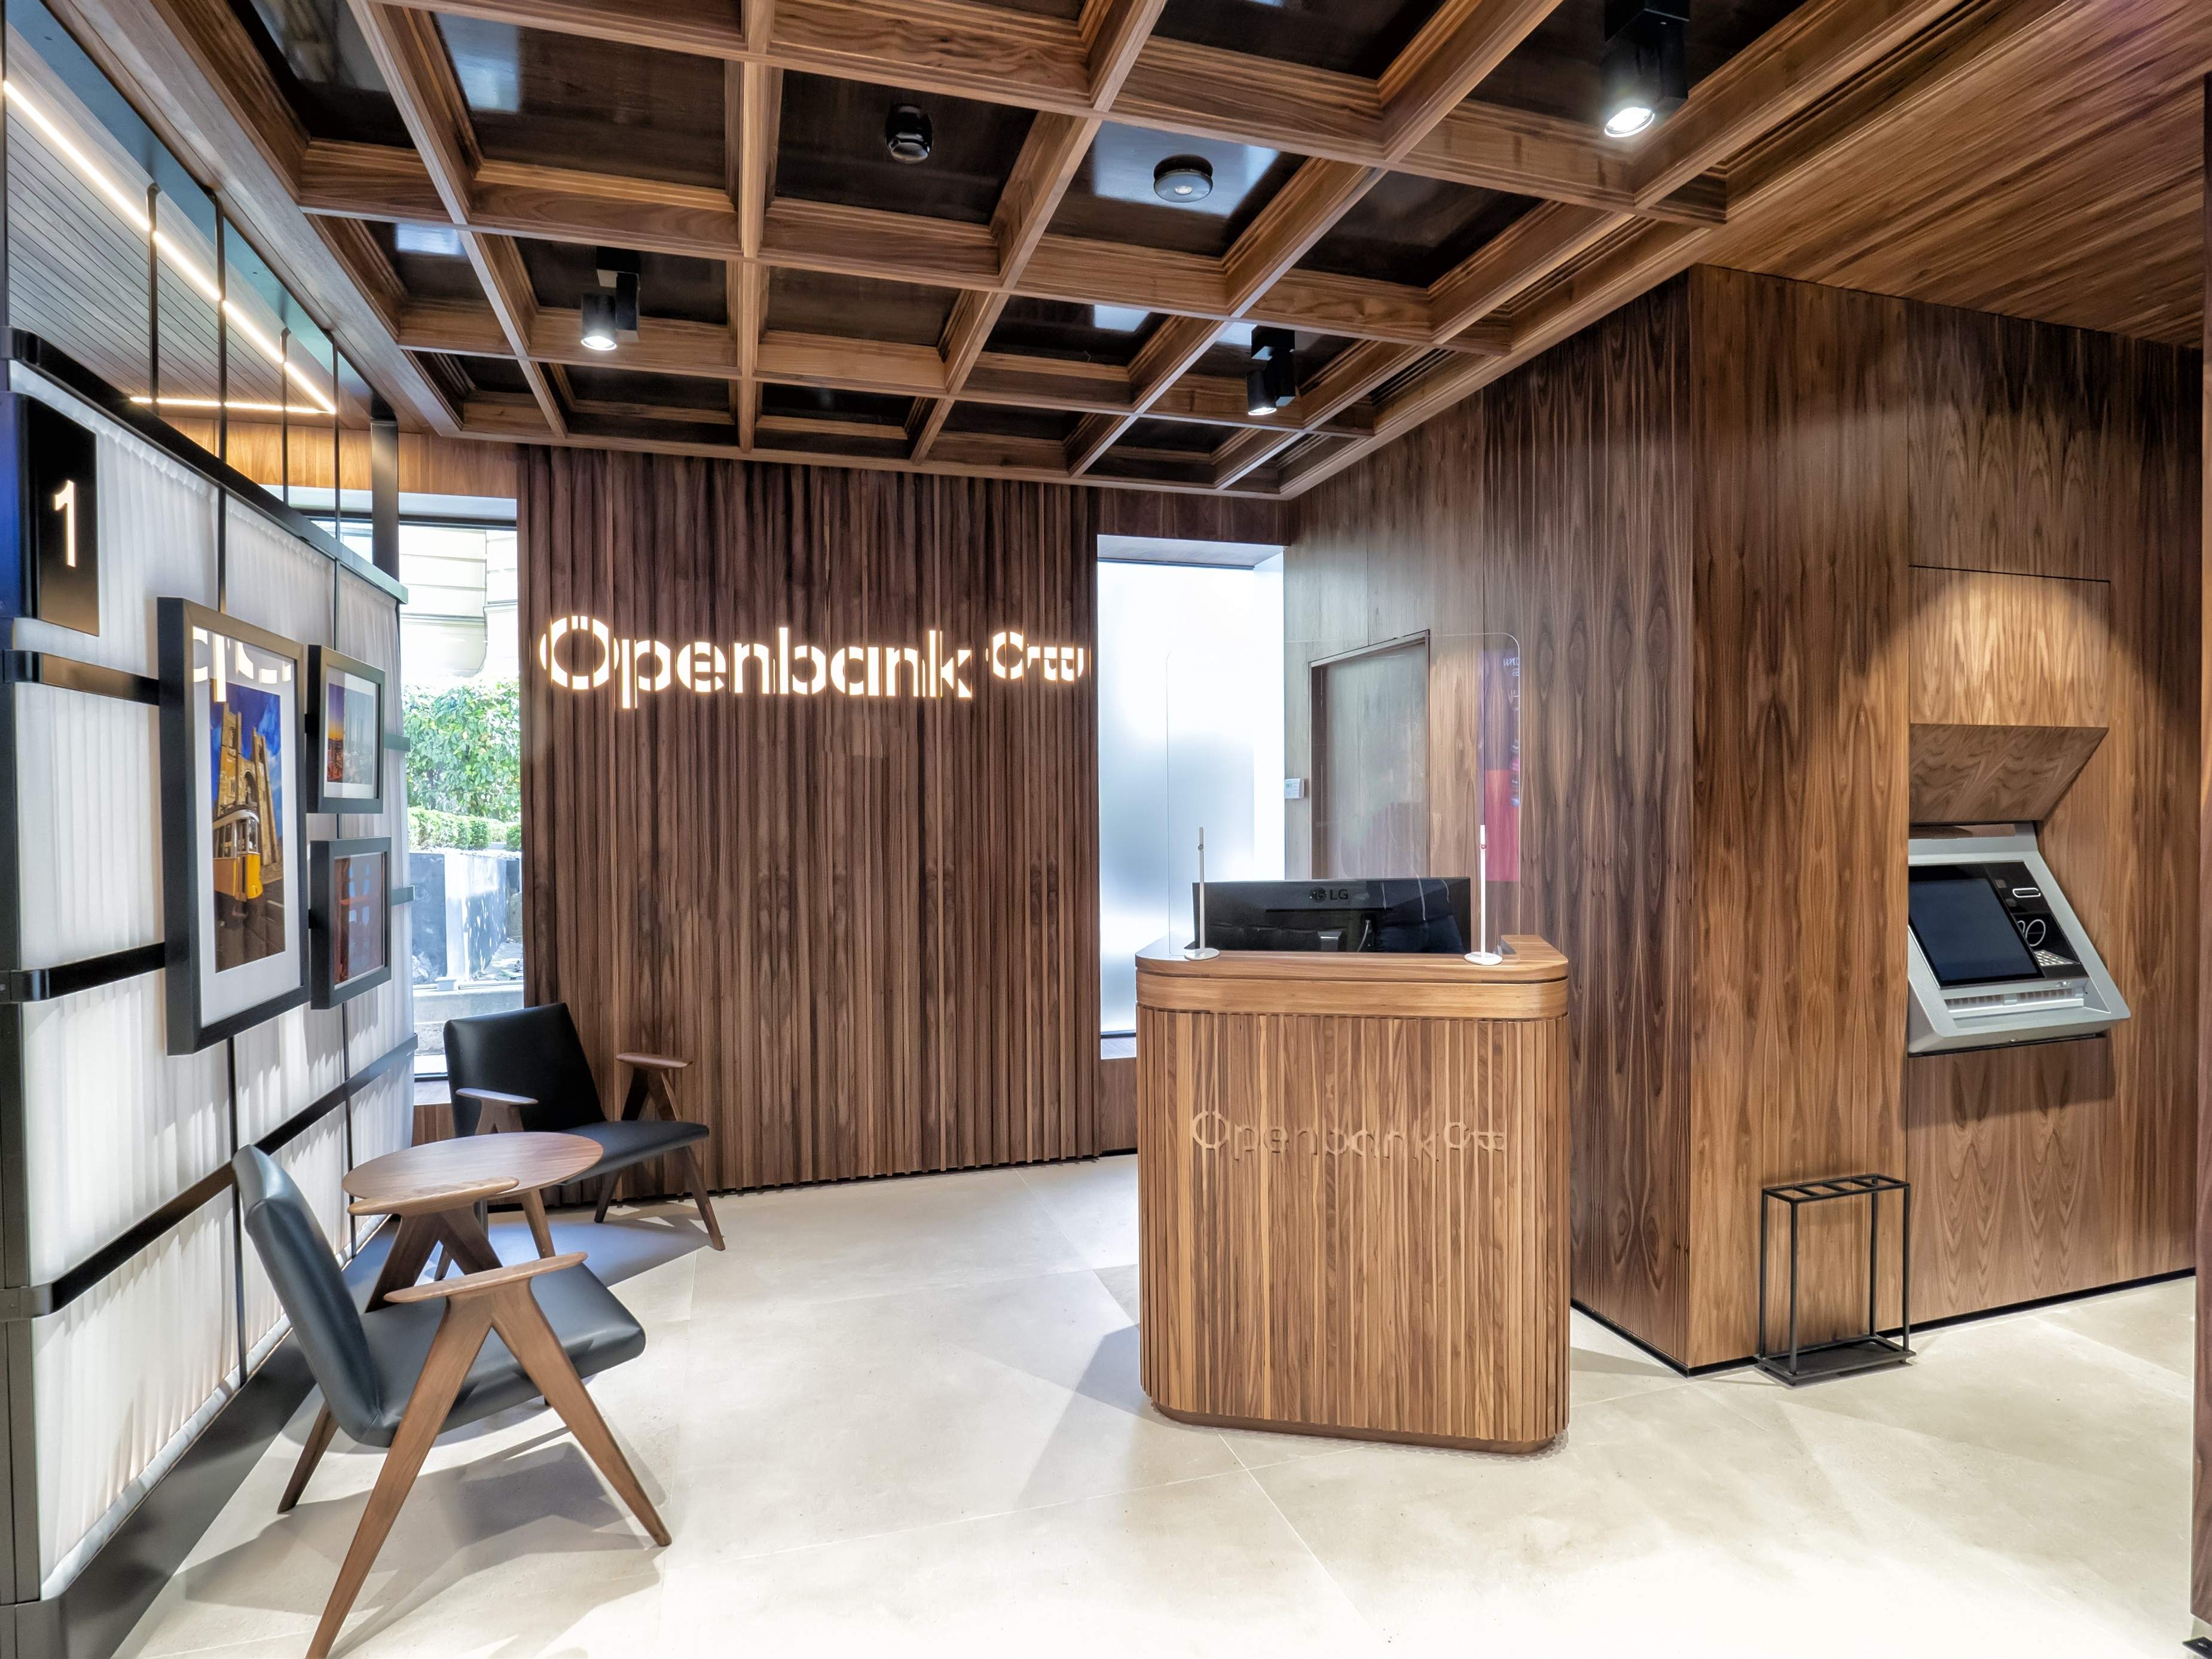 Openbank multiplica per 9 el seu negoci i ja aporta més de 120 milions al benefici del Santander